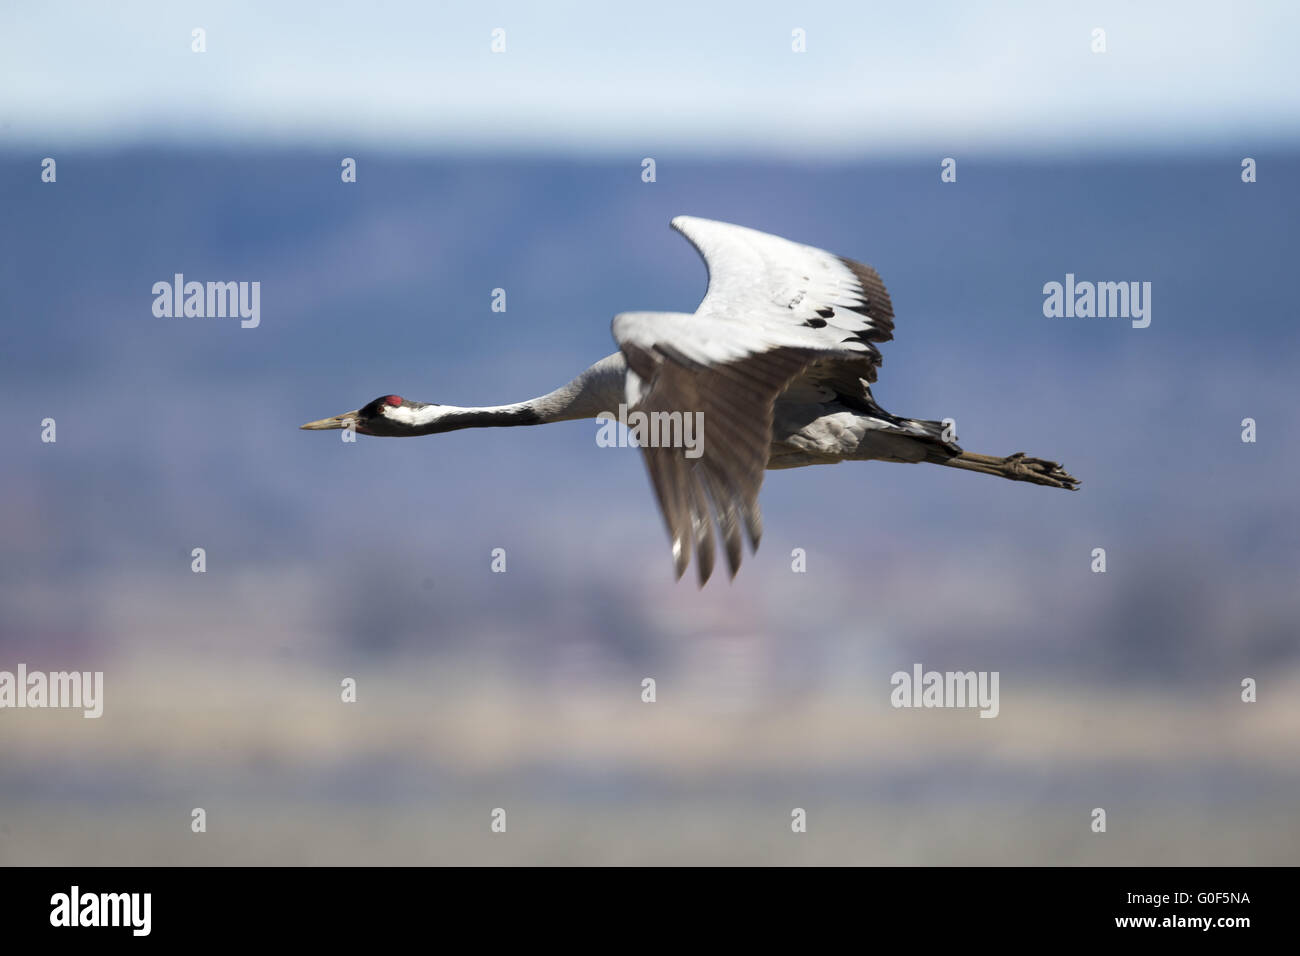 flying eurasian crane Stock Photo